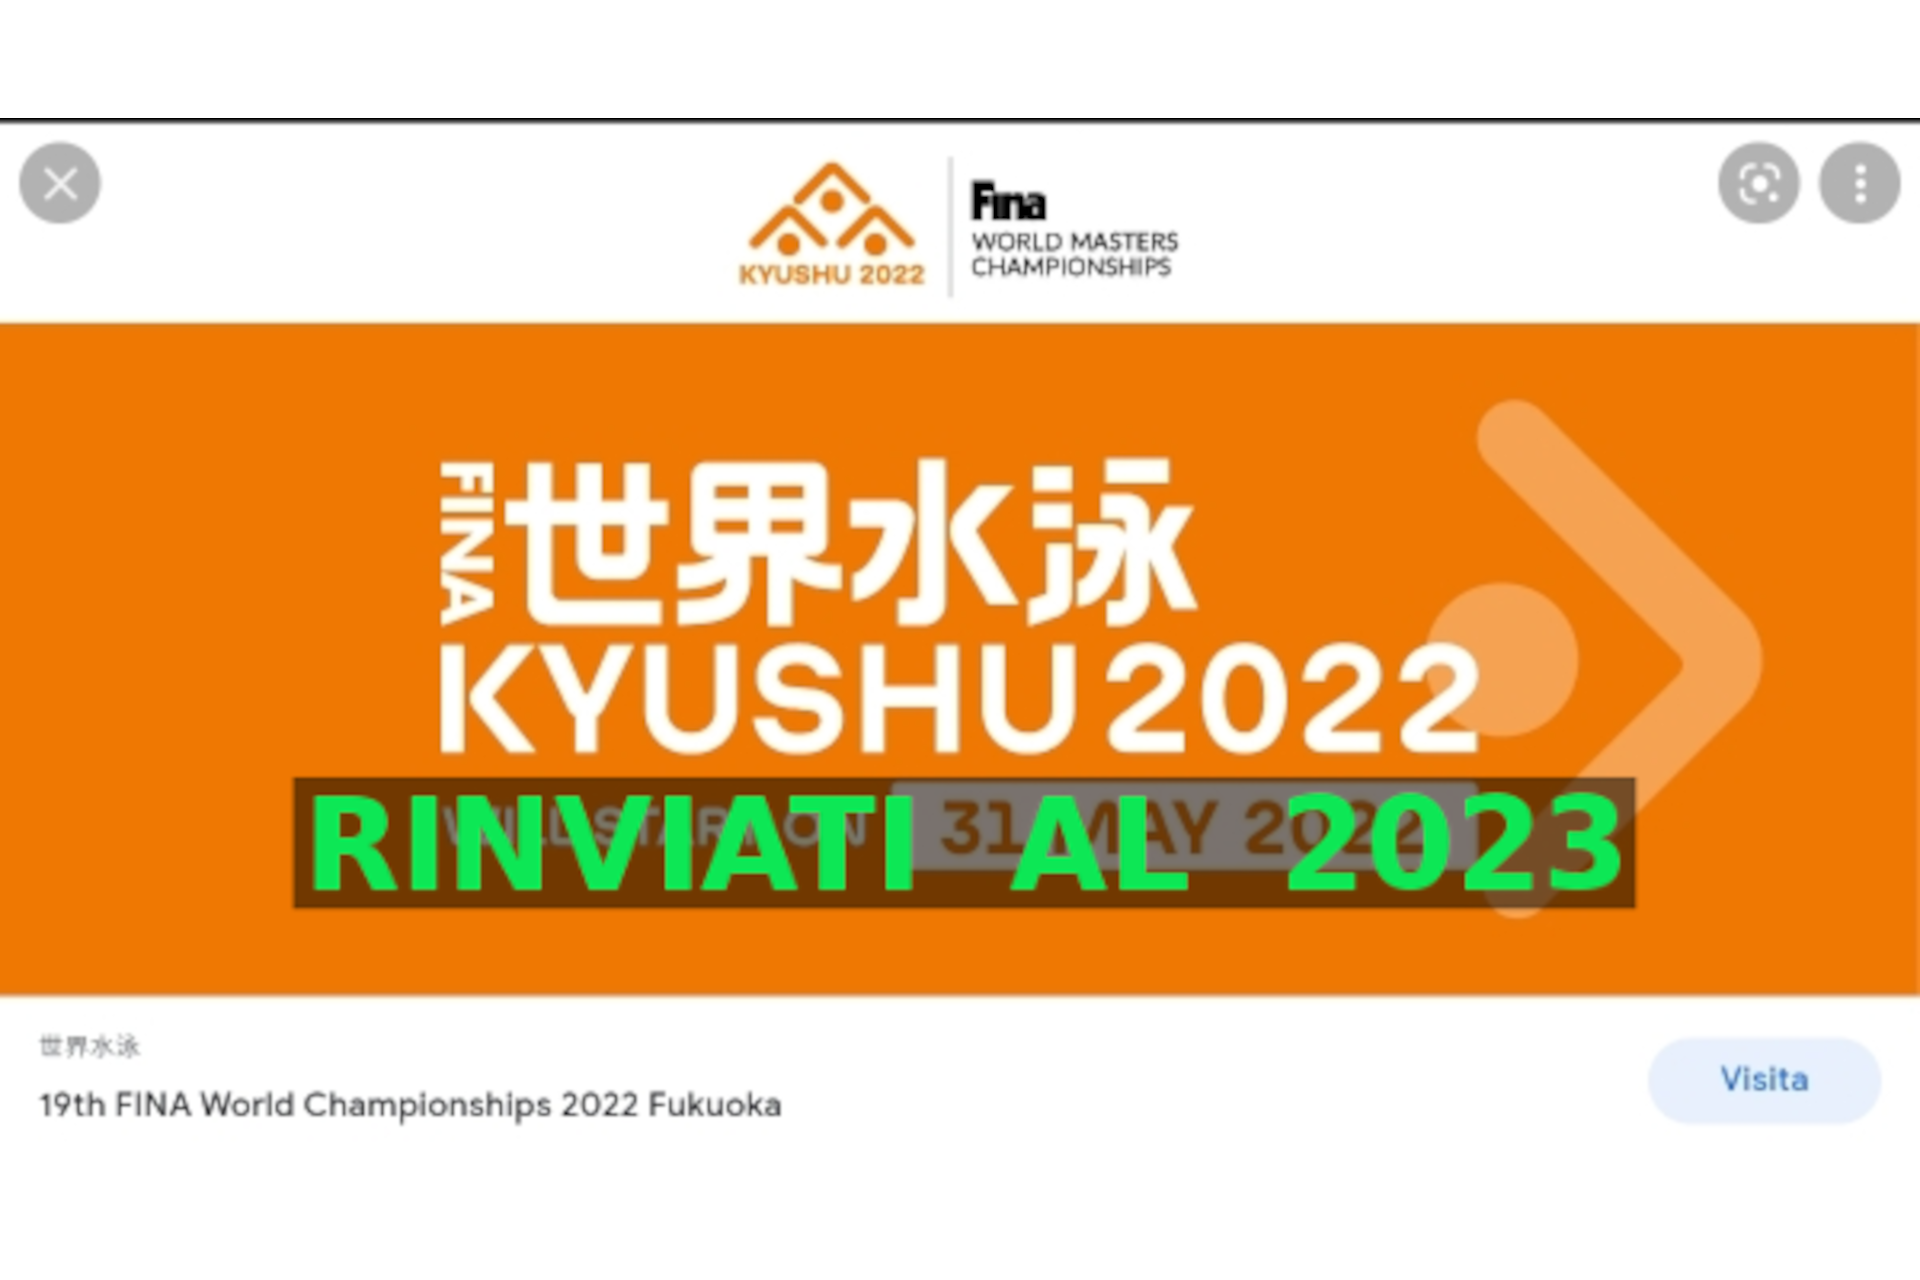 Mondiali Master 2022 Fukuoka